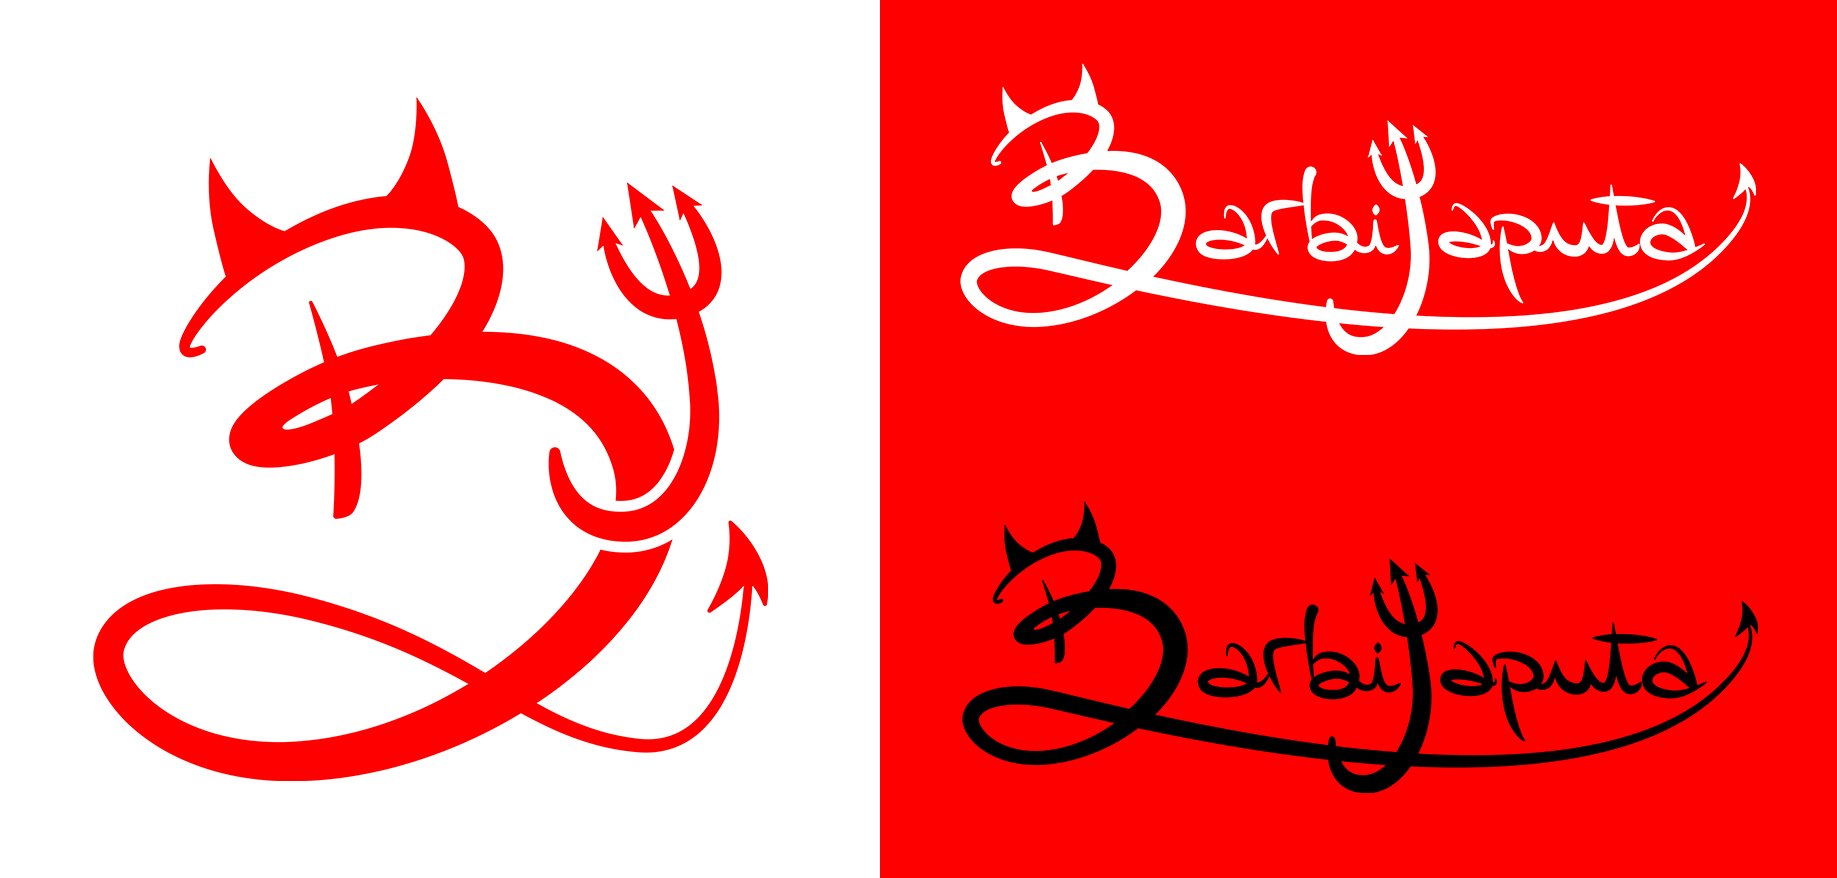 barbijaputa logos versiones